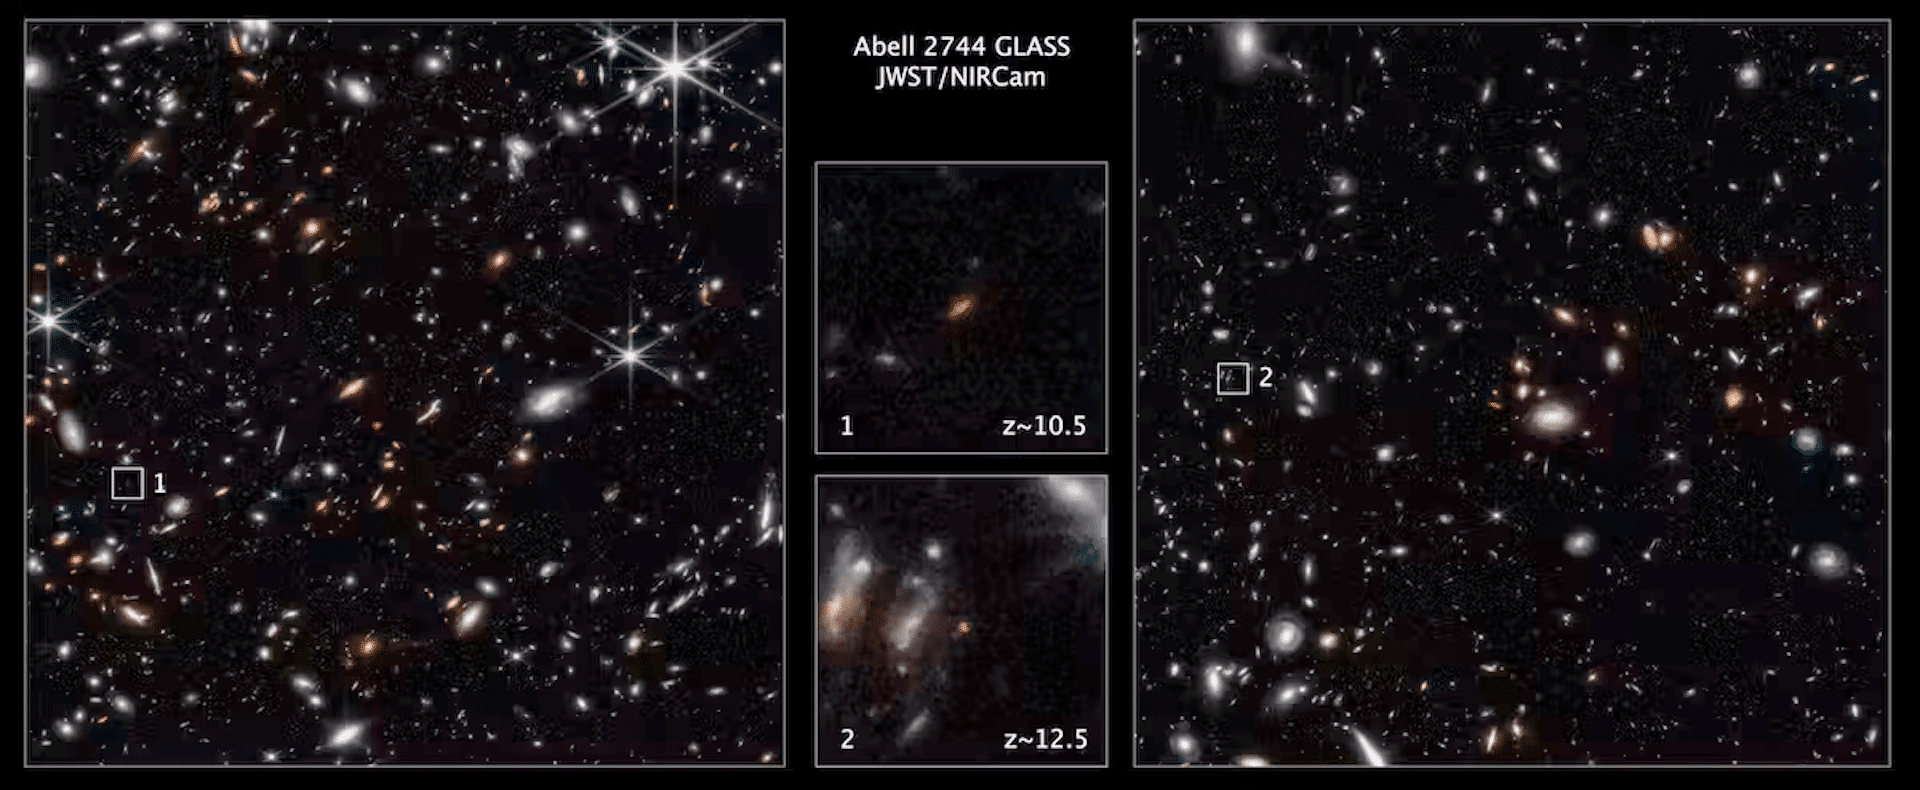 שתי תמונות המראות סדרה של גלקסיות עם תיבות קטנות סביב כתמים אדומים עמומים. תמונות מטלסקופ החלל ג'יימס וב המראות גלקסיות מוקדמות. נאס"א, ESA, CSA, Tommaso Treu (UCLA), CC BY-SA